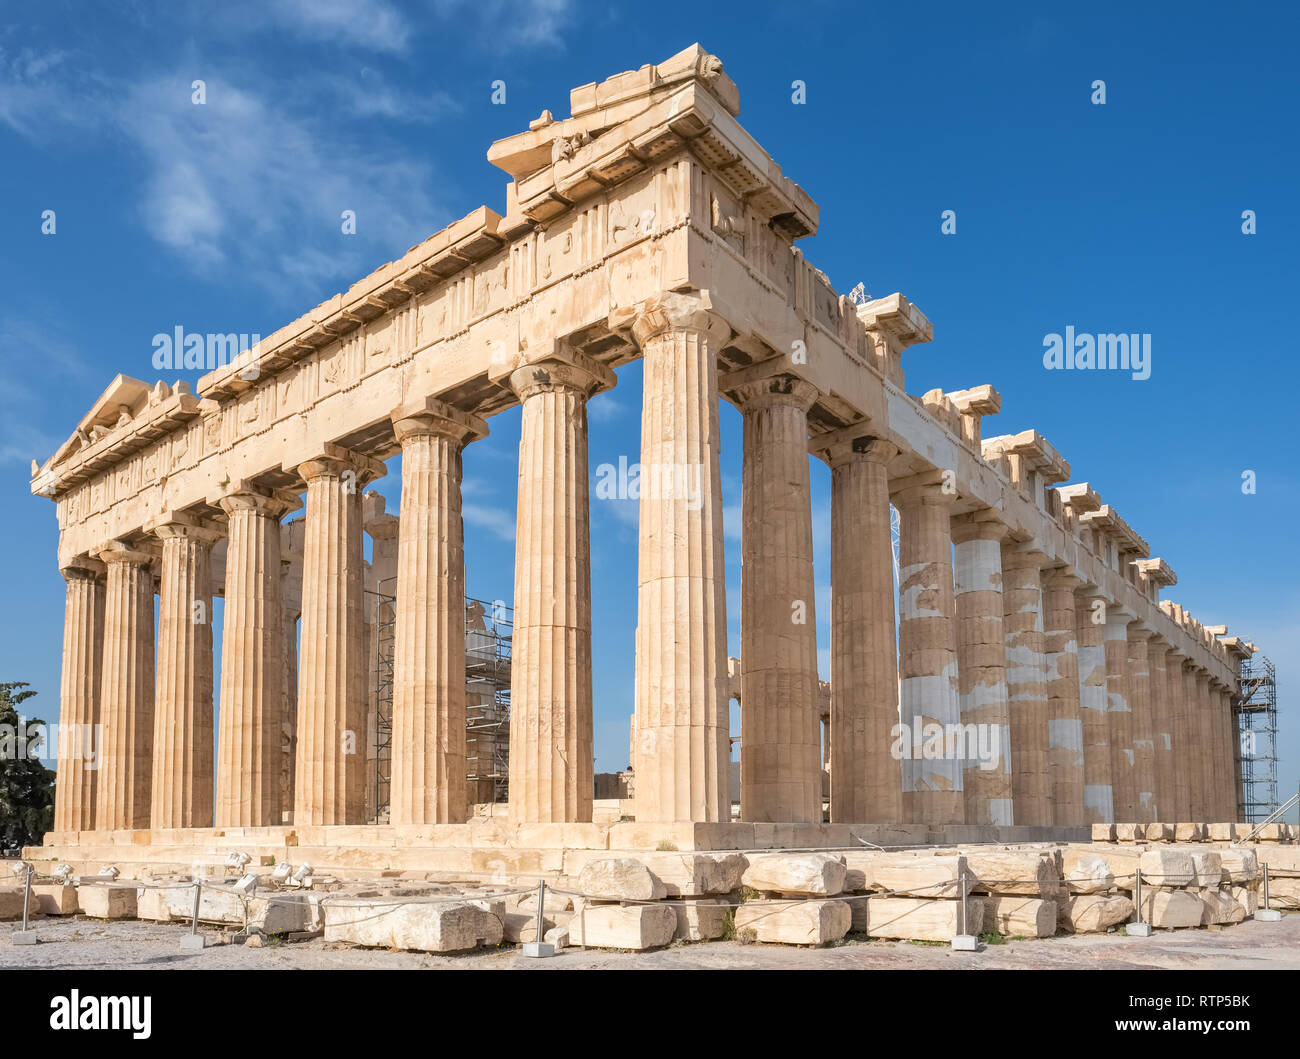 Columns of Parthenon temple in Acropolis, Athens. Stock Photo